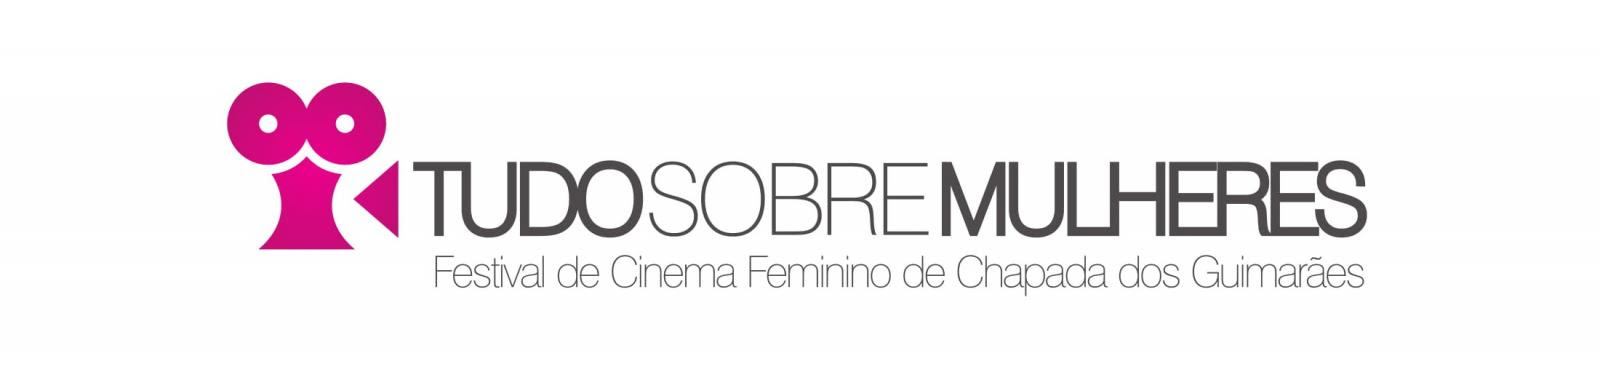 [CINEMA] Tudo sobre Mulheres: Festival de Cinema Feminino da Chapada de Guimarães